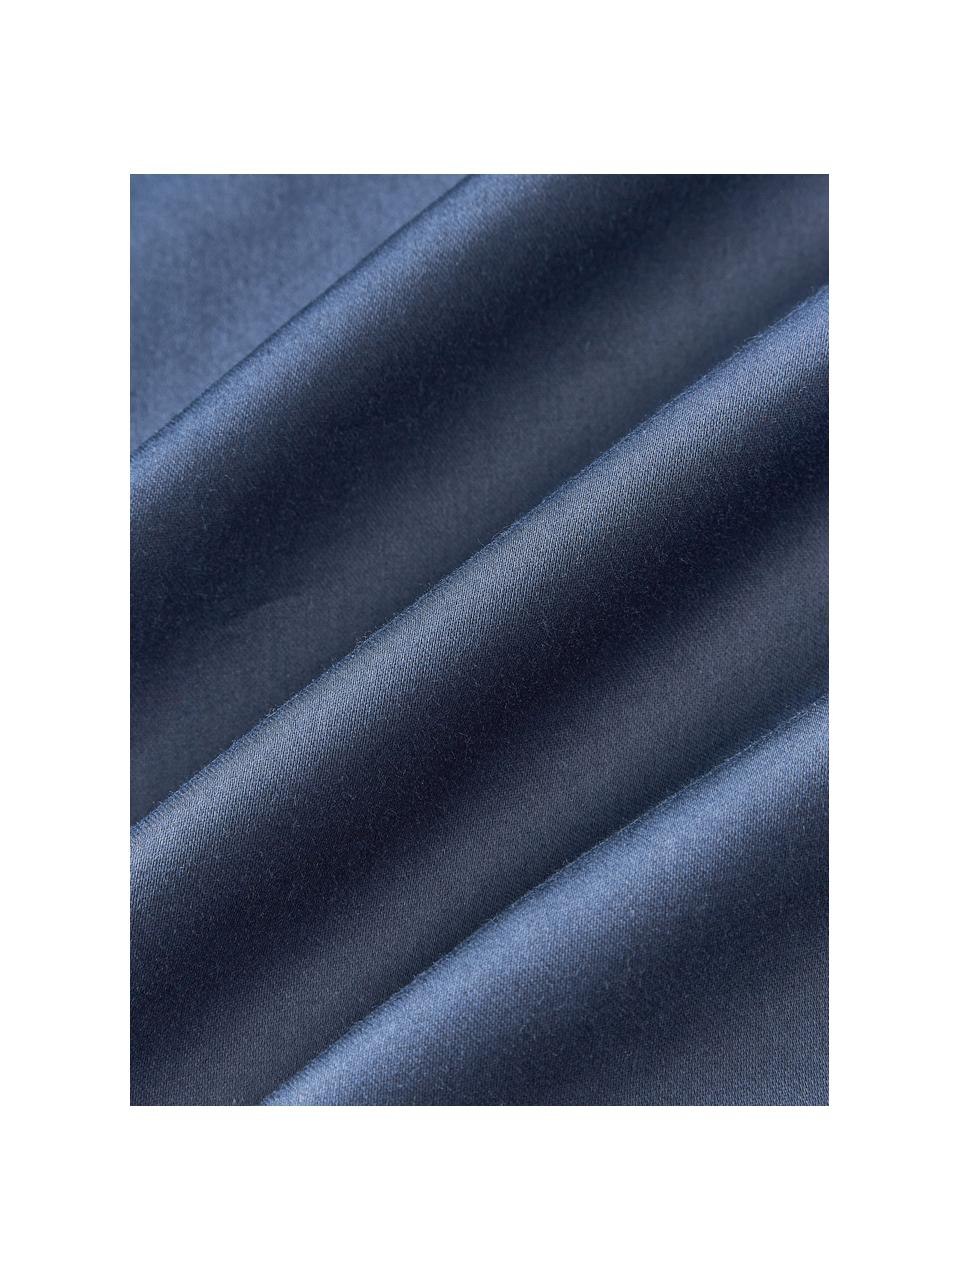 Housse de couette en satin de coton Comfort, Bleu foncé, larg. 200 x long. 200 cm